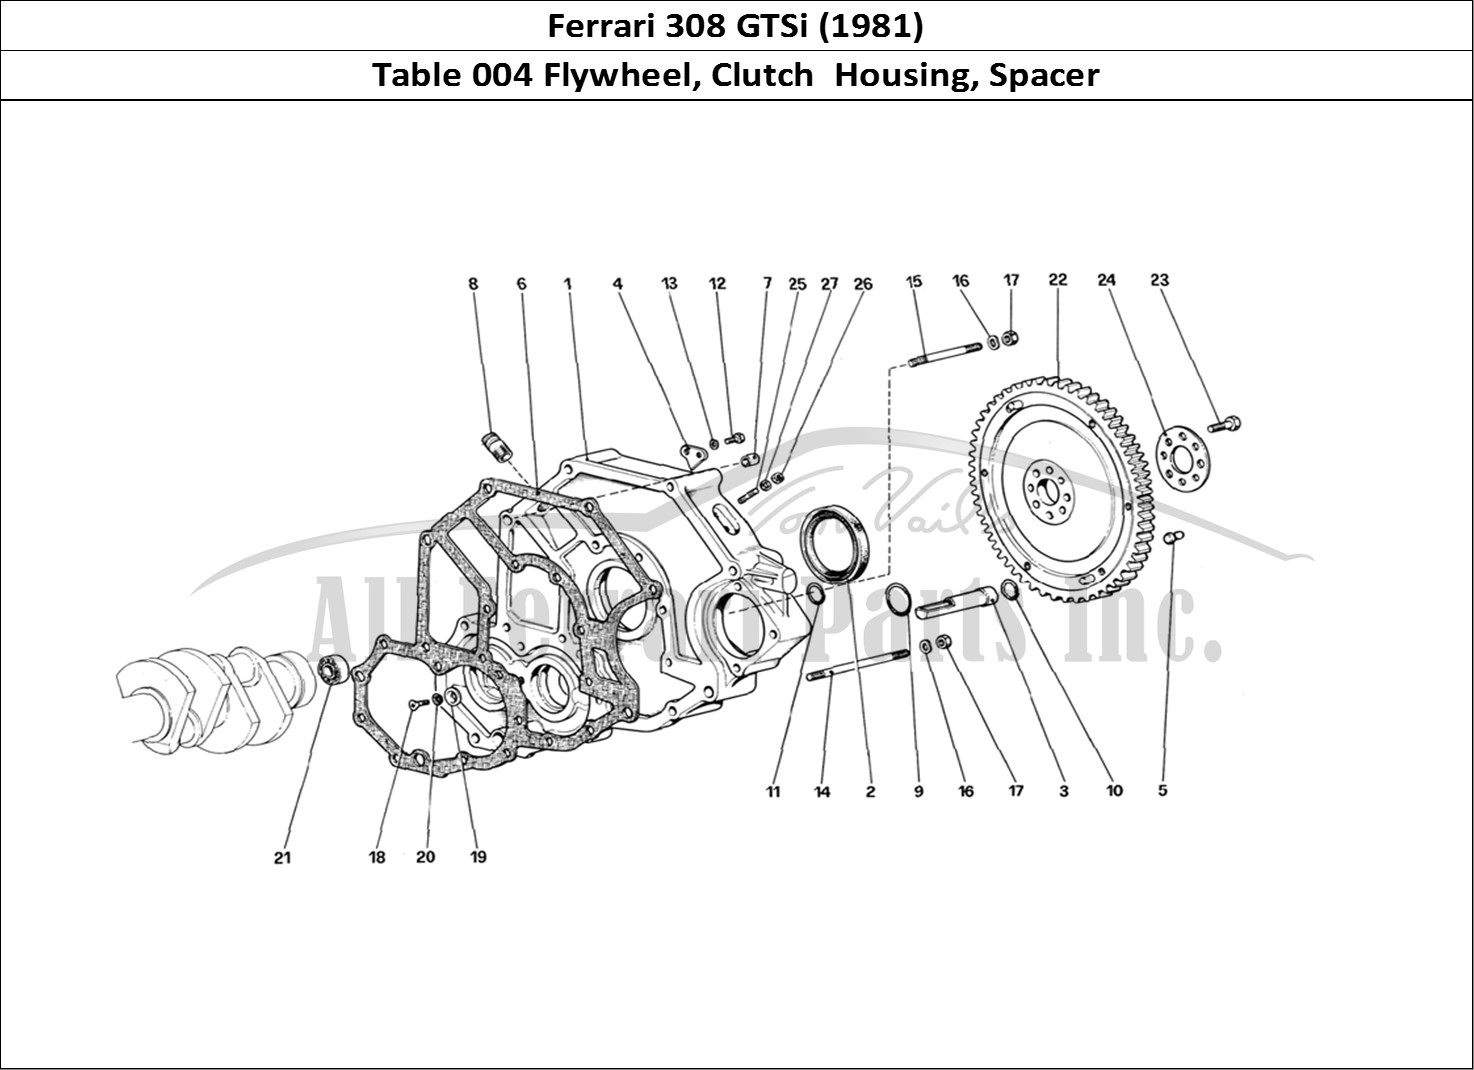 Ferrari Parts Ferrari 308 GTBi (1981) Page 004 Flywheel and Clutch Housi